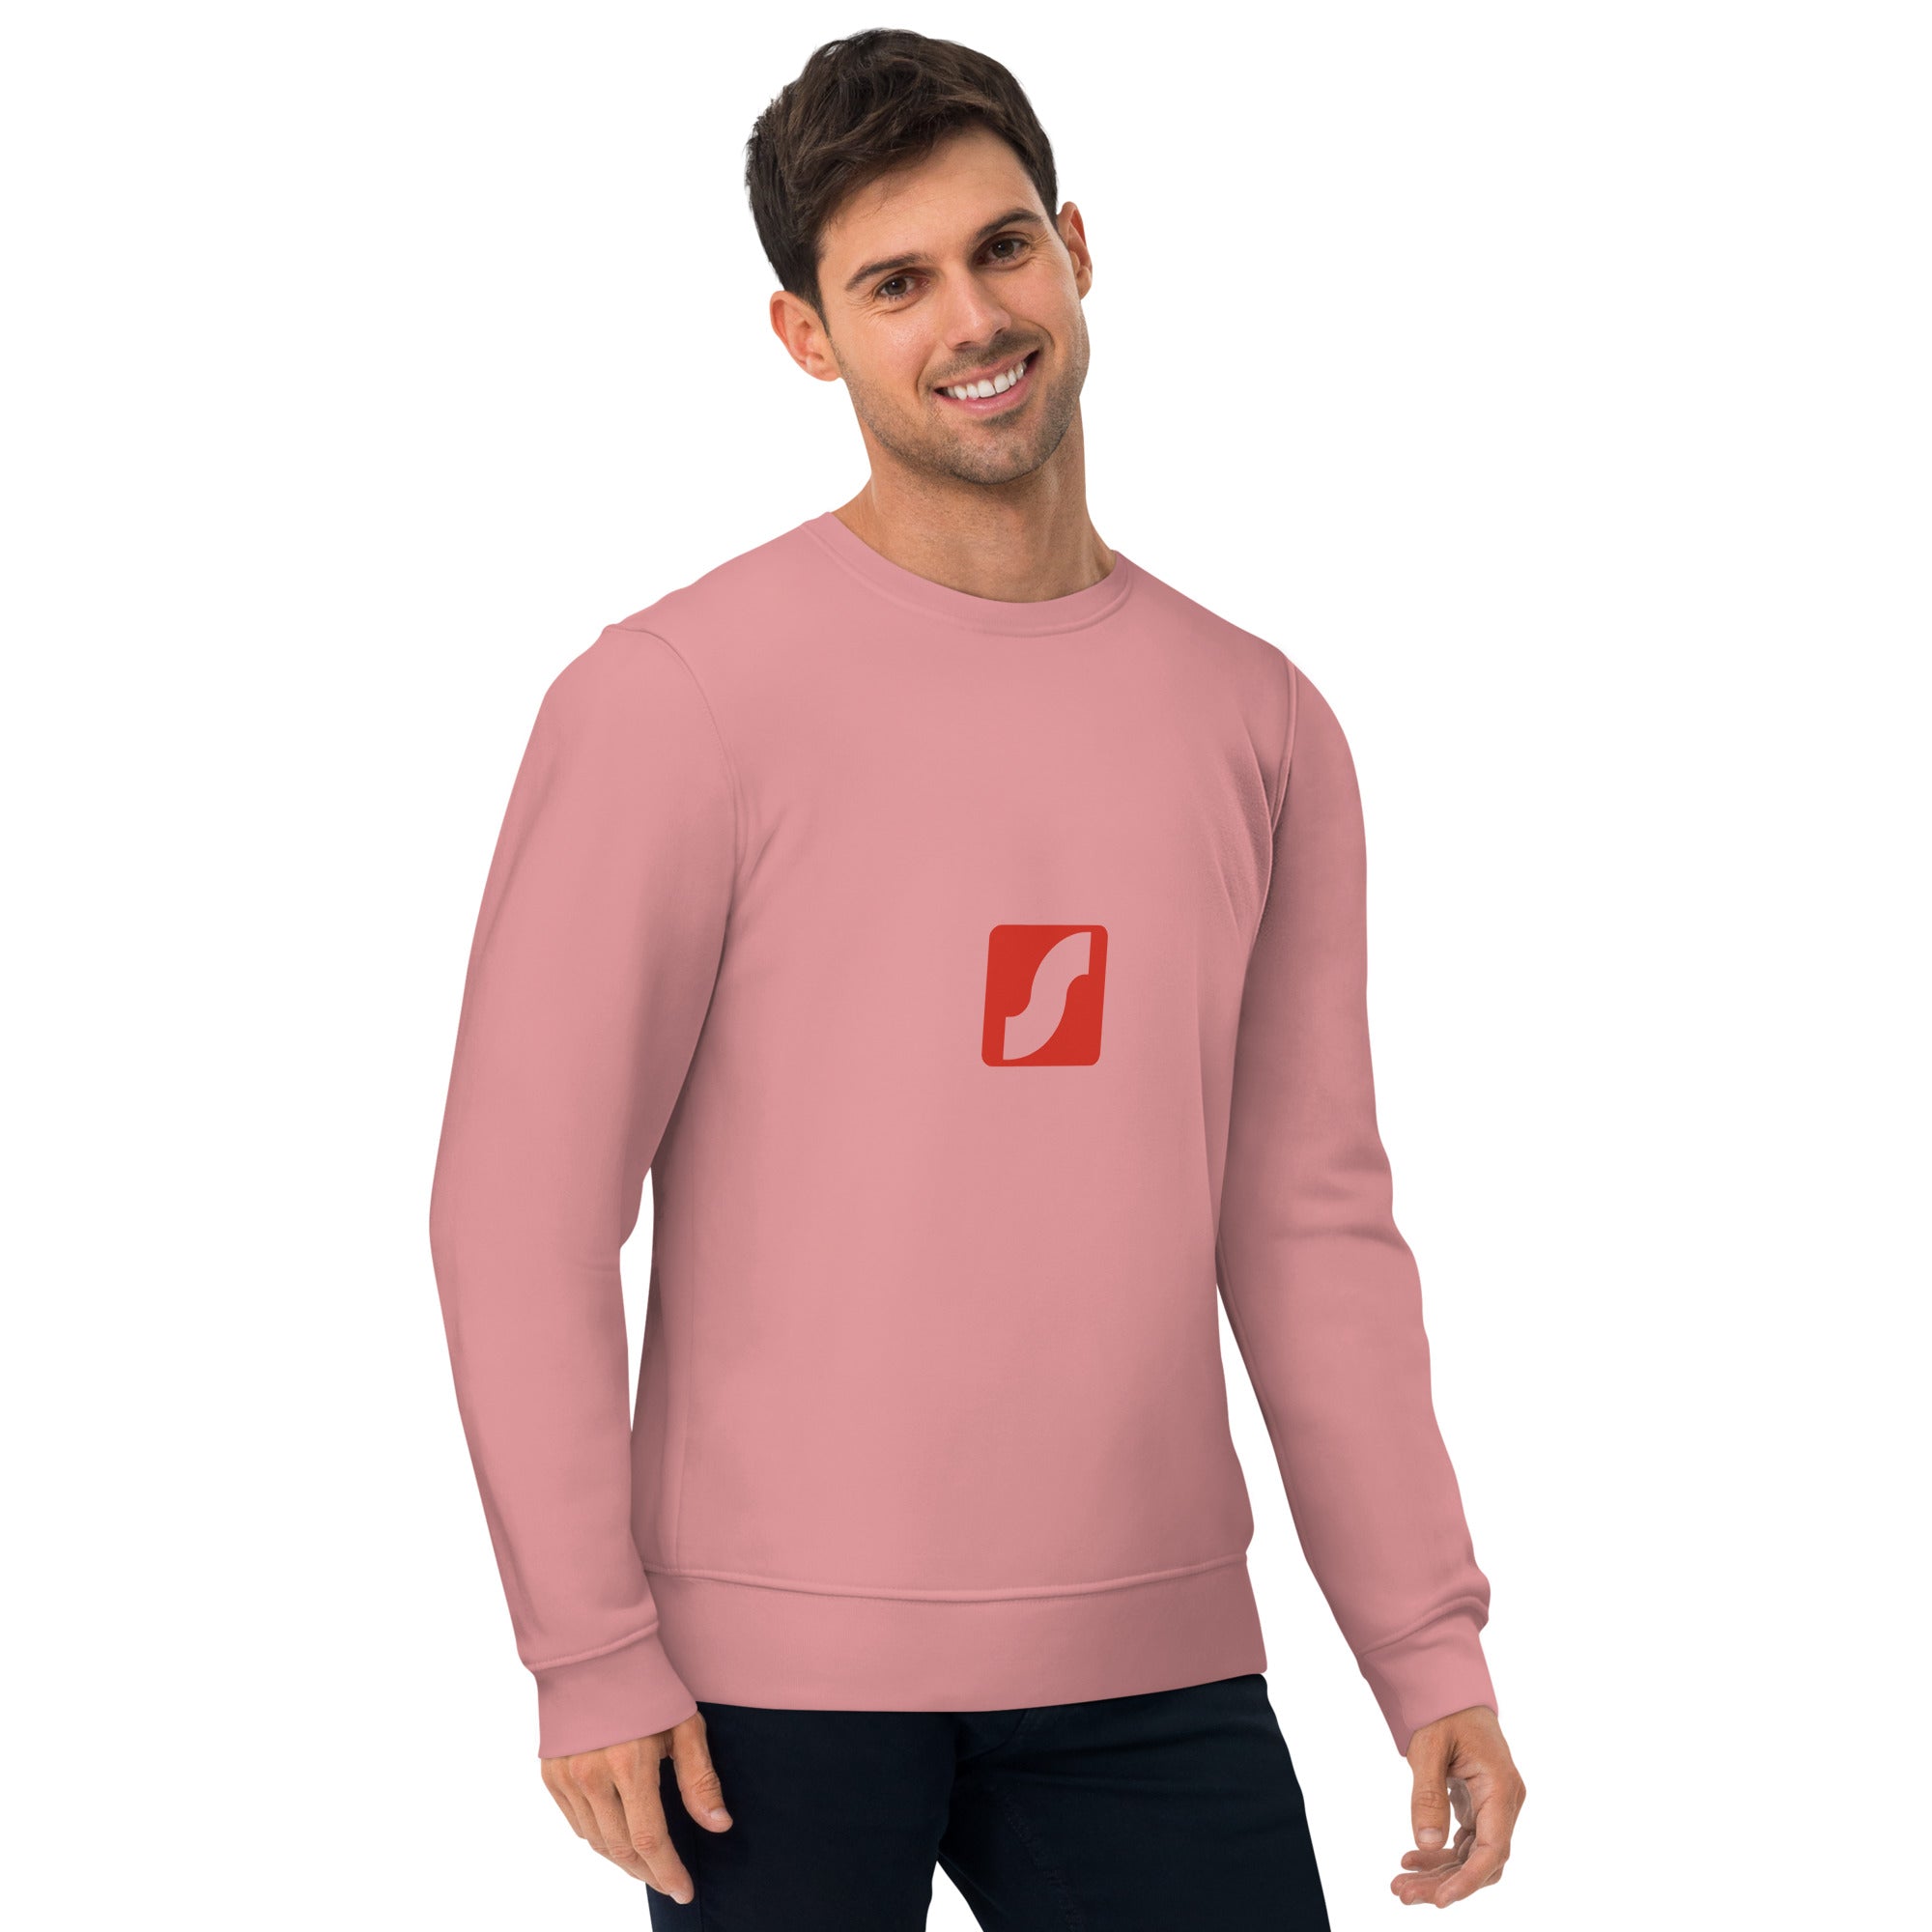 Unisex eco sweatshirt